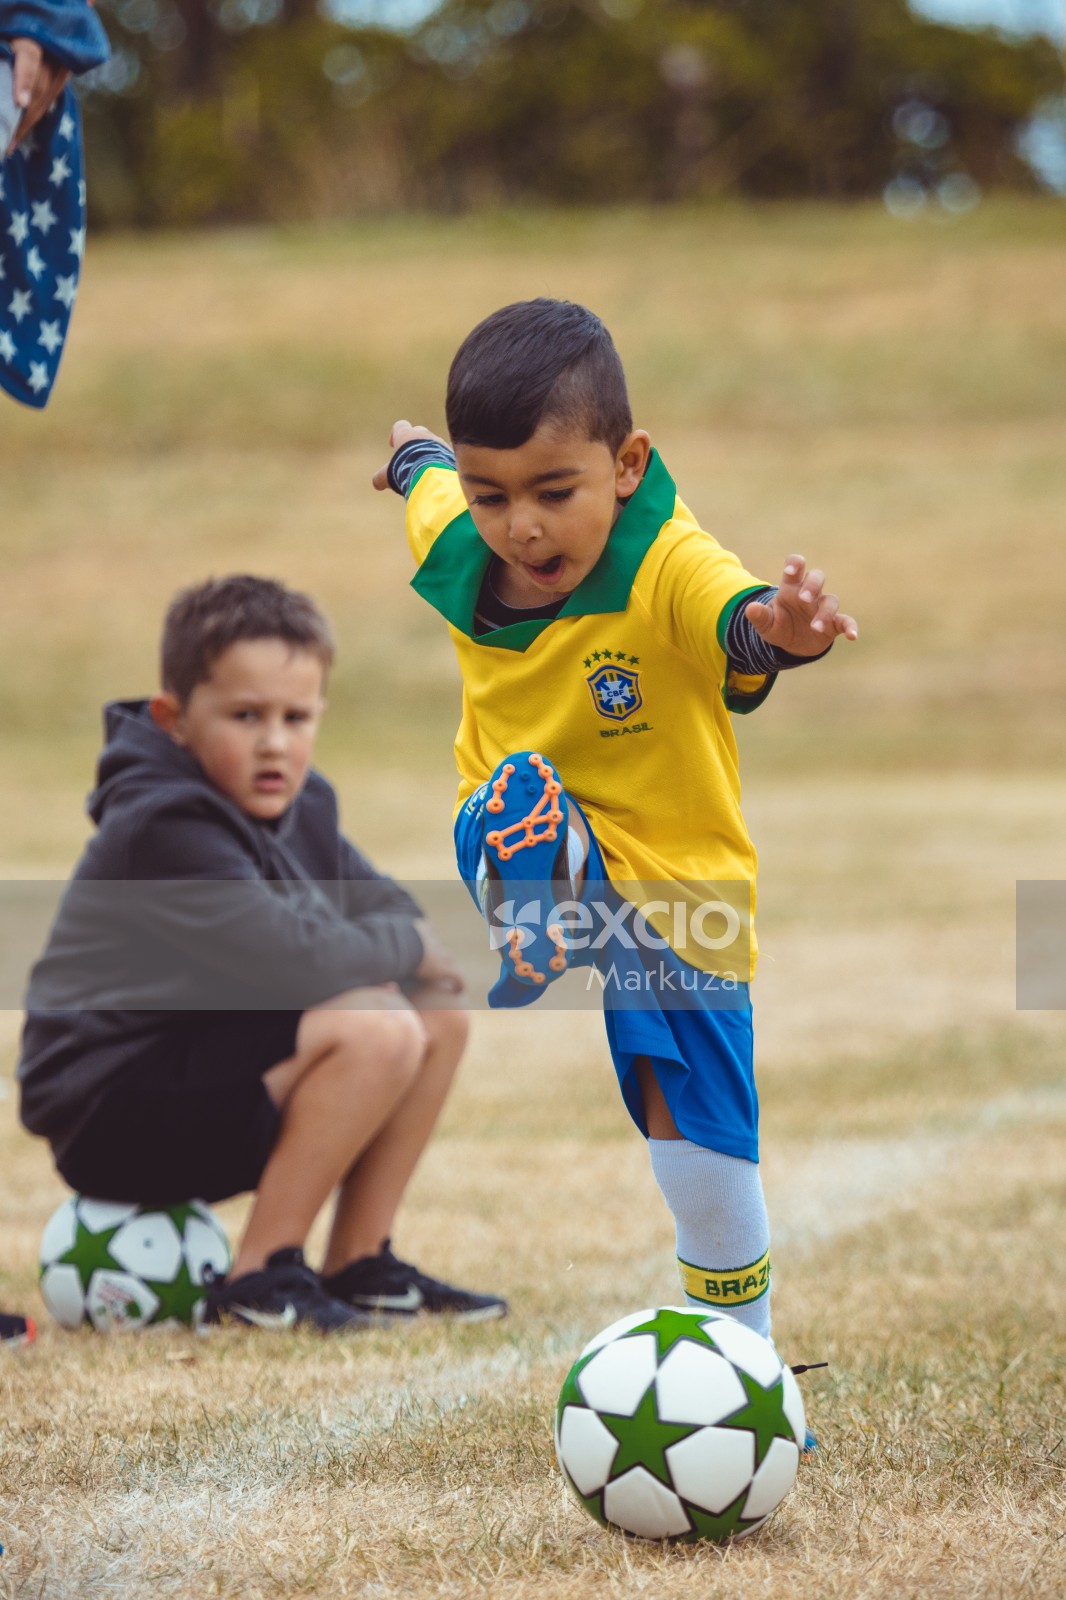 Boy in Brasil kit kicking football at Little Dribblers soccer game